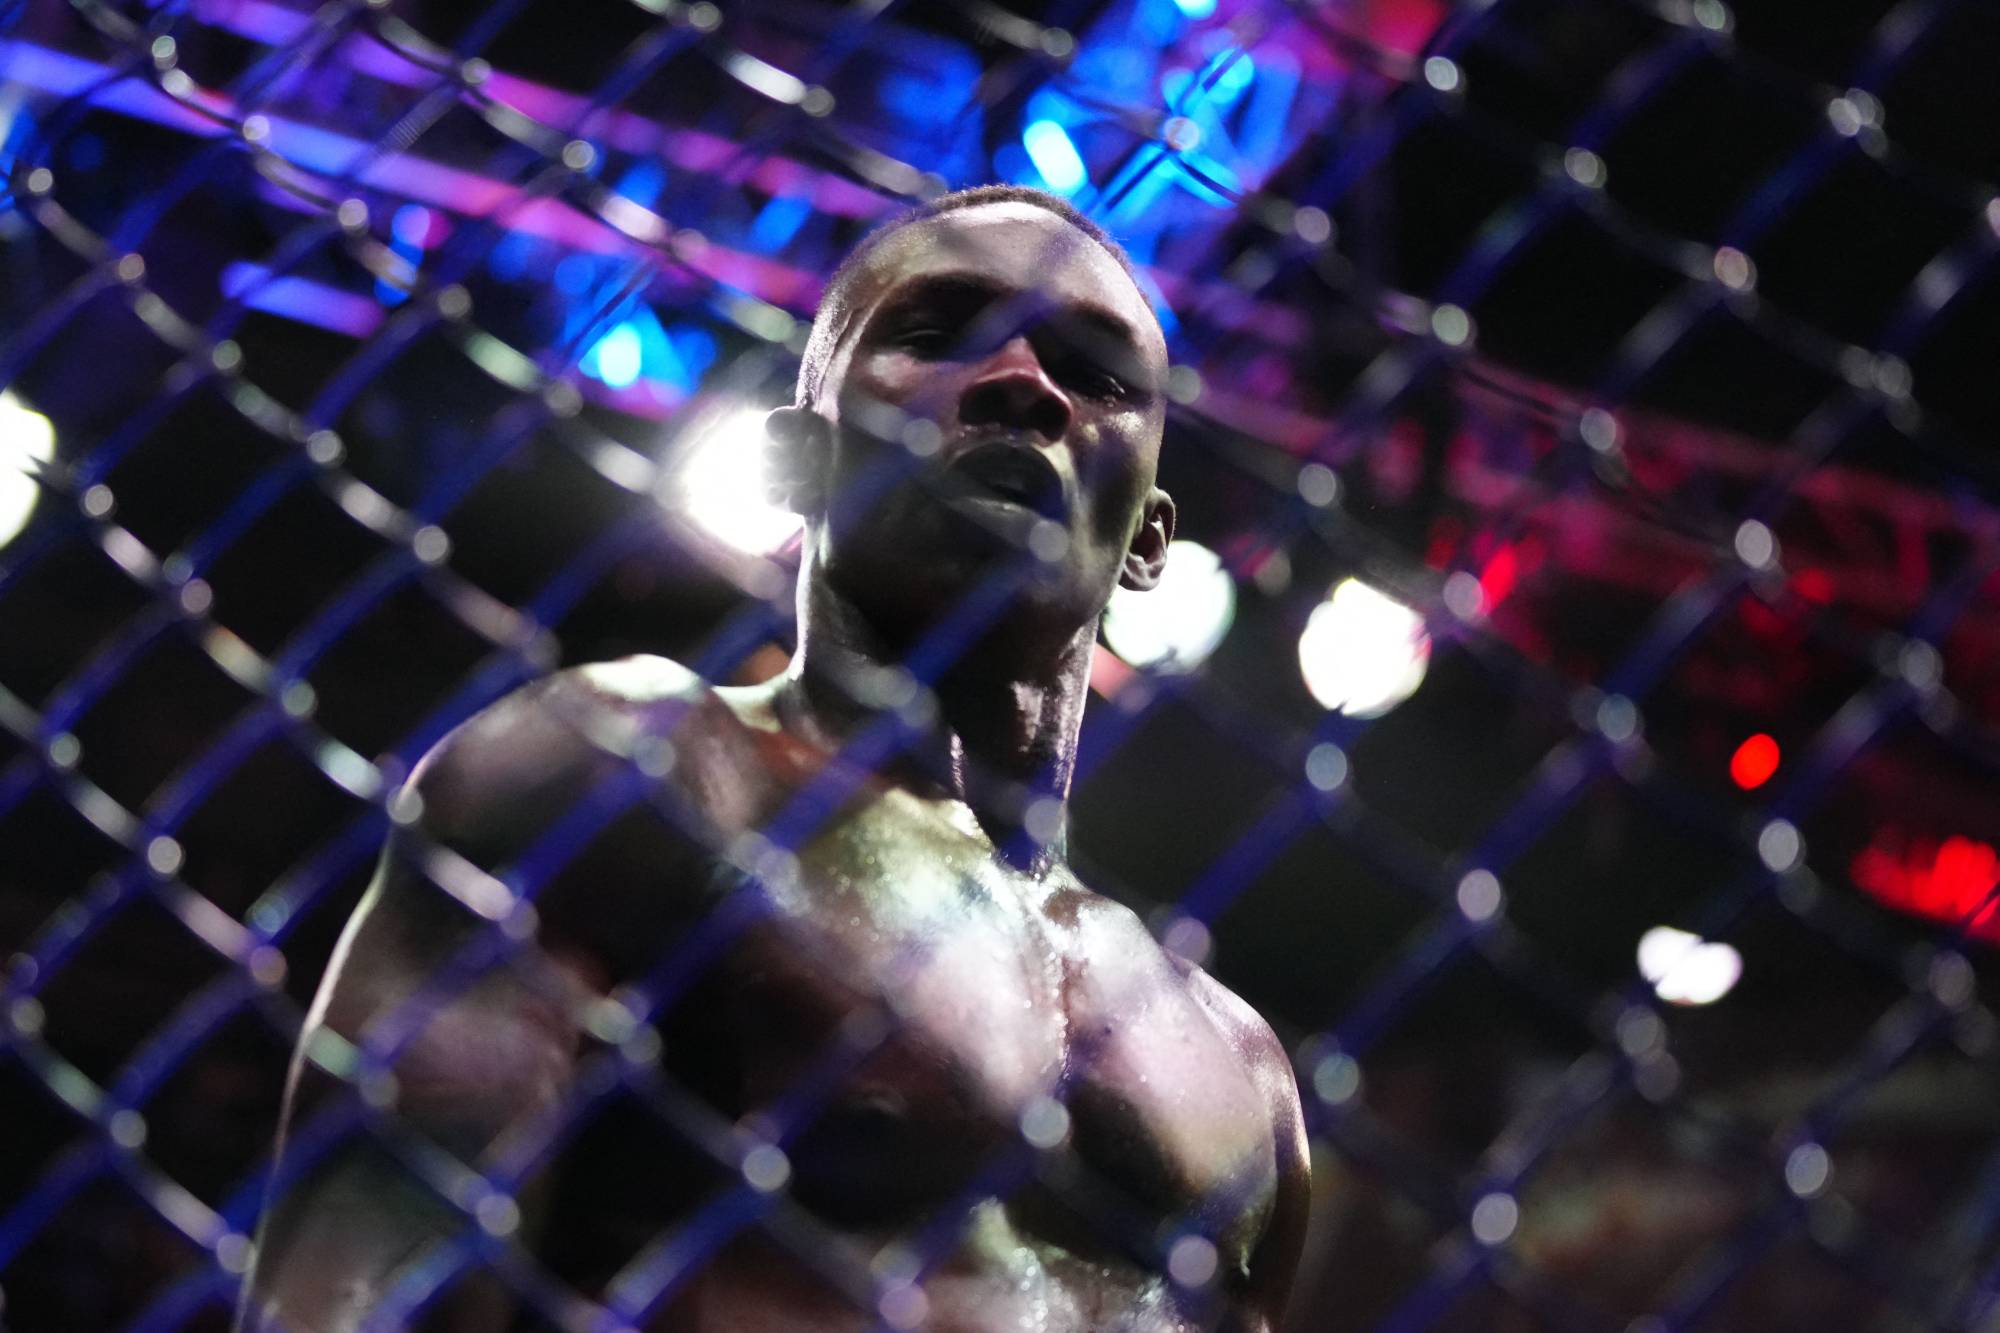 Israel Adesanya, peleador de la UFC